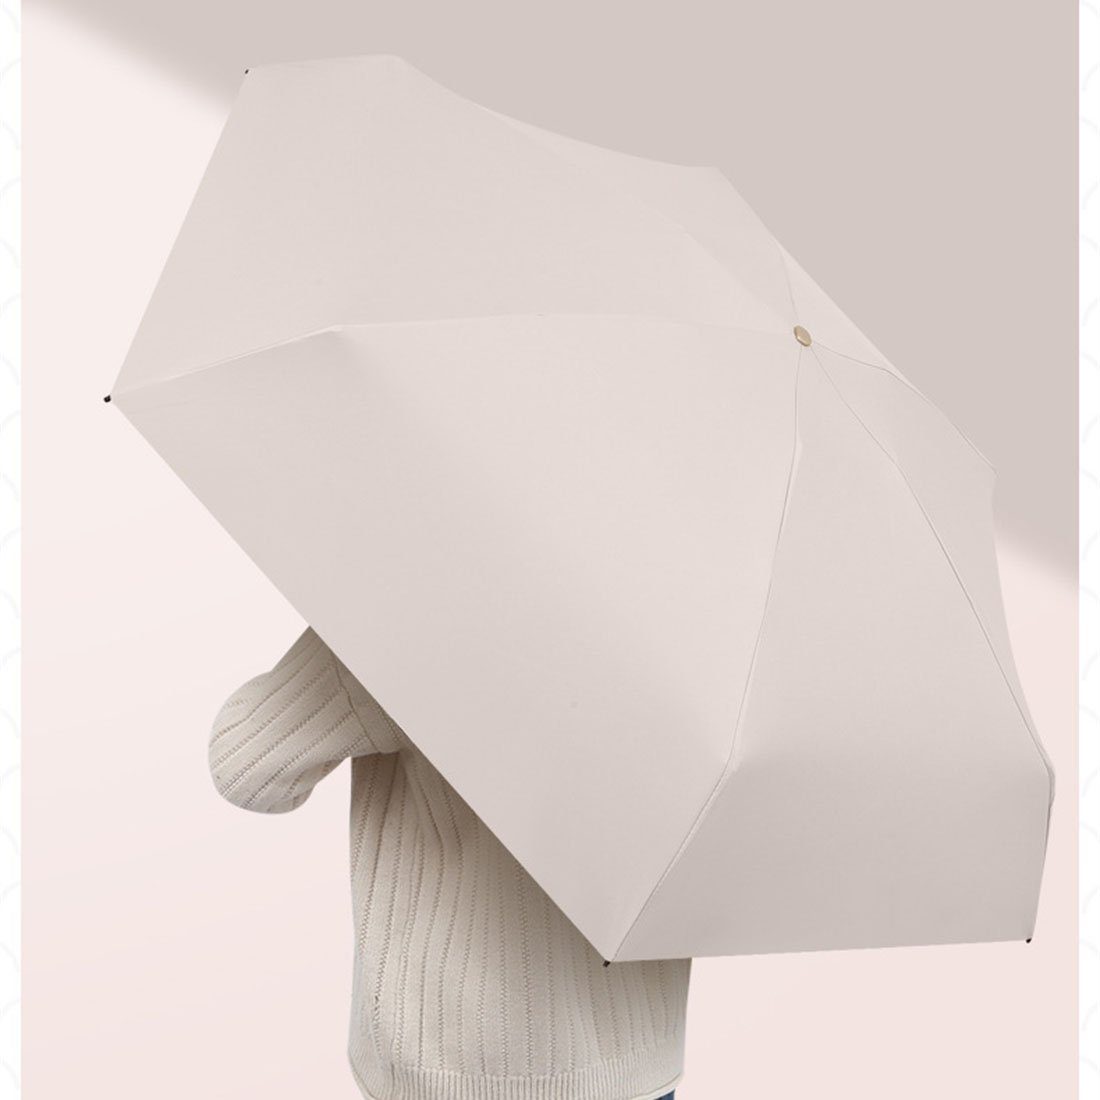 Weiß für Sonnenschutz winzig Regenschirm unterwegs Treibsand Taschenregenschirm sonnenschirm YOOdy~ Mini klein